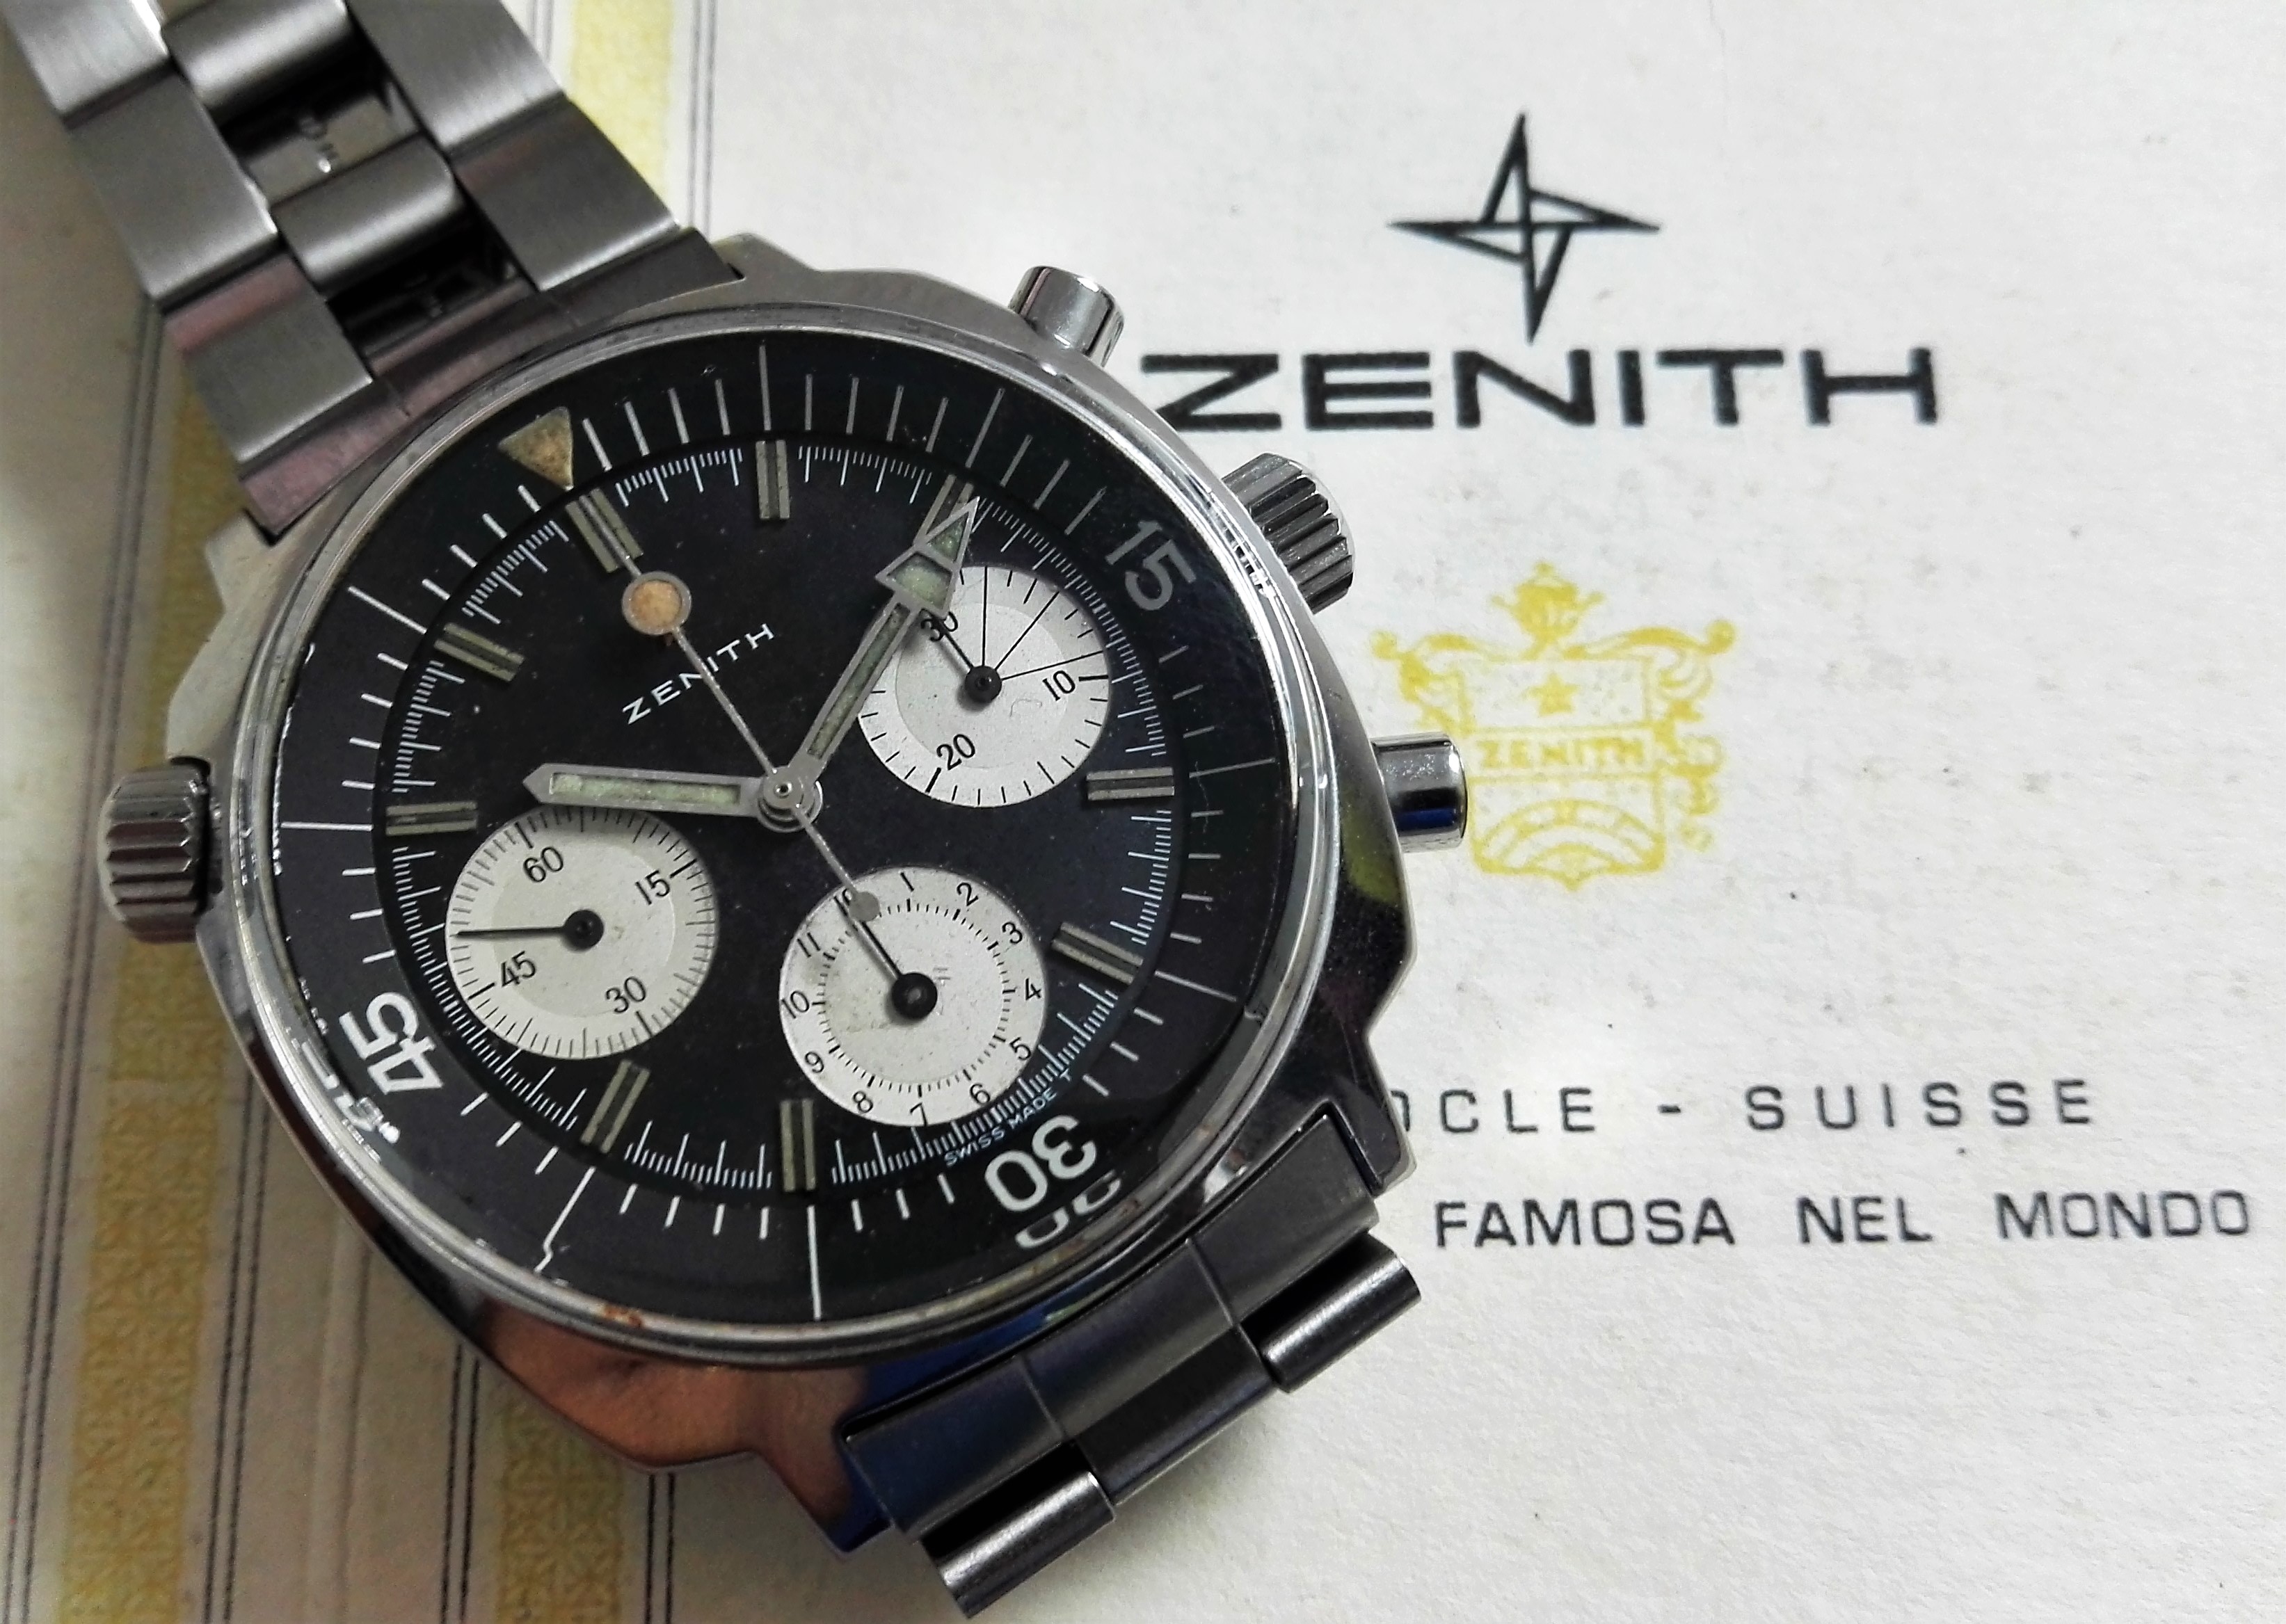 Zenith Super Sub Sea Chronograph A3736 caliber 146hp GayFreres band | San Giorgio a Cremano